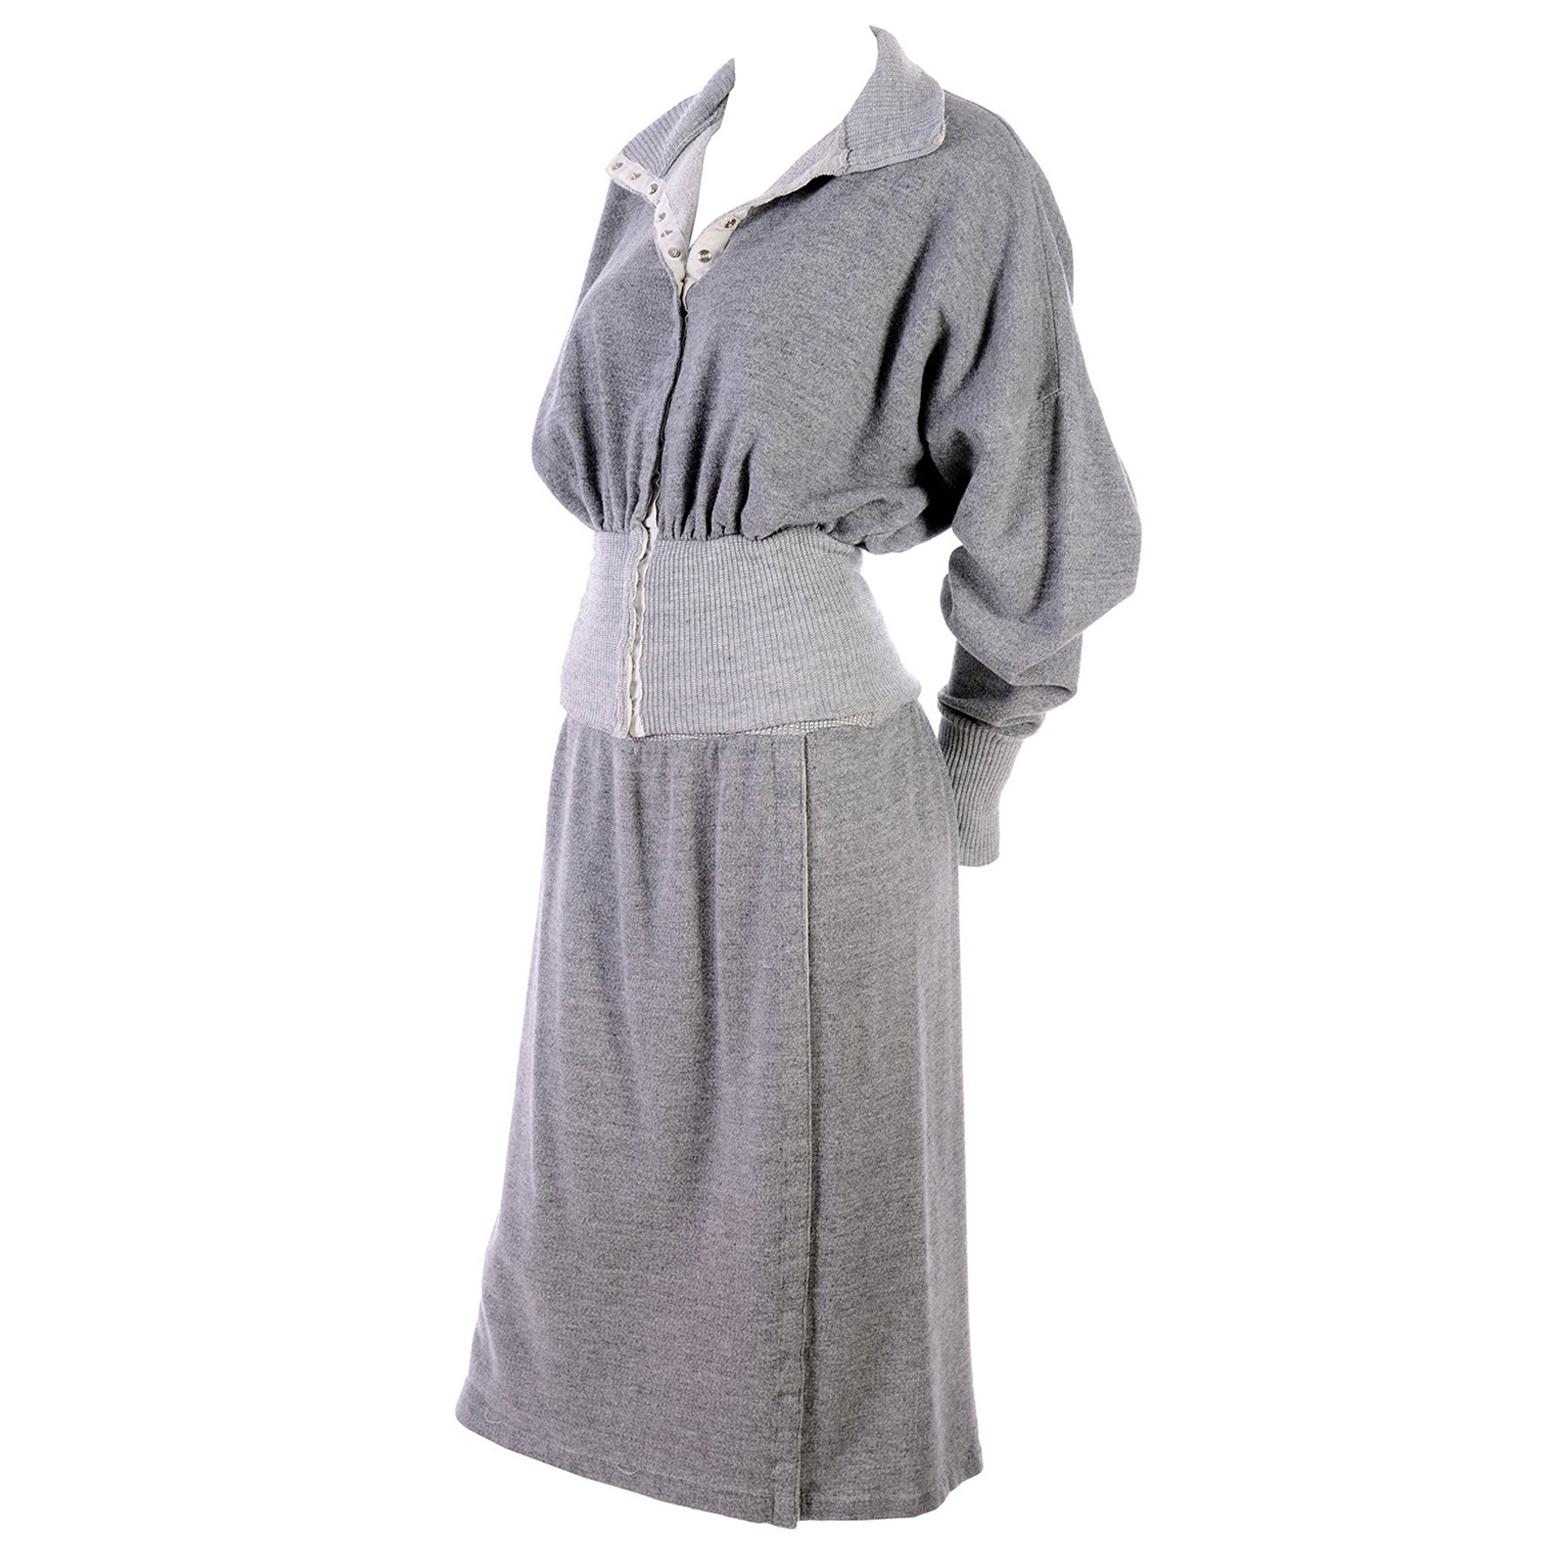 1980s Norma Kamali OMO Gray Fleece Sweatshirt 2 pc Dress w Skirt & Top